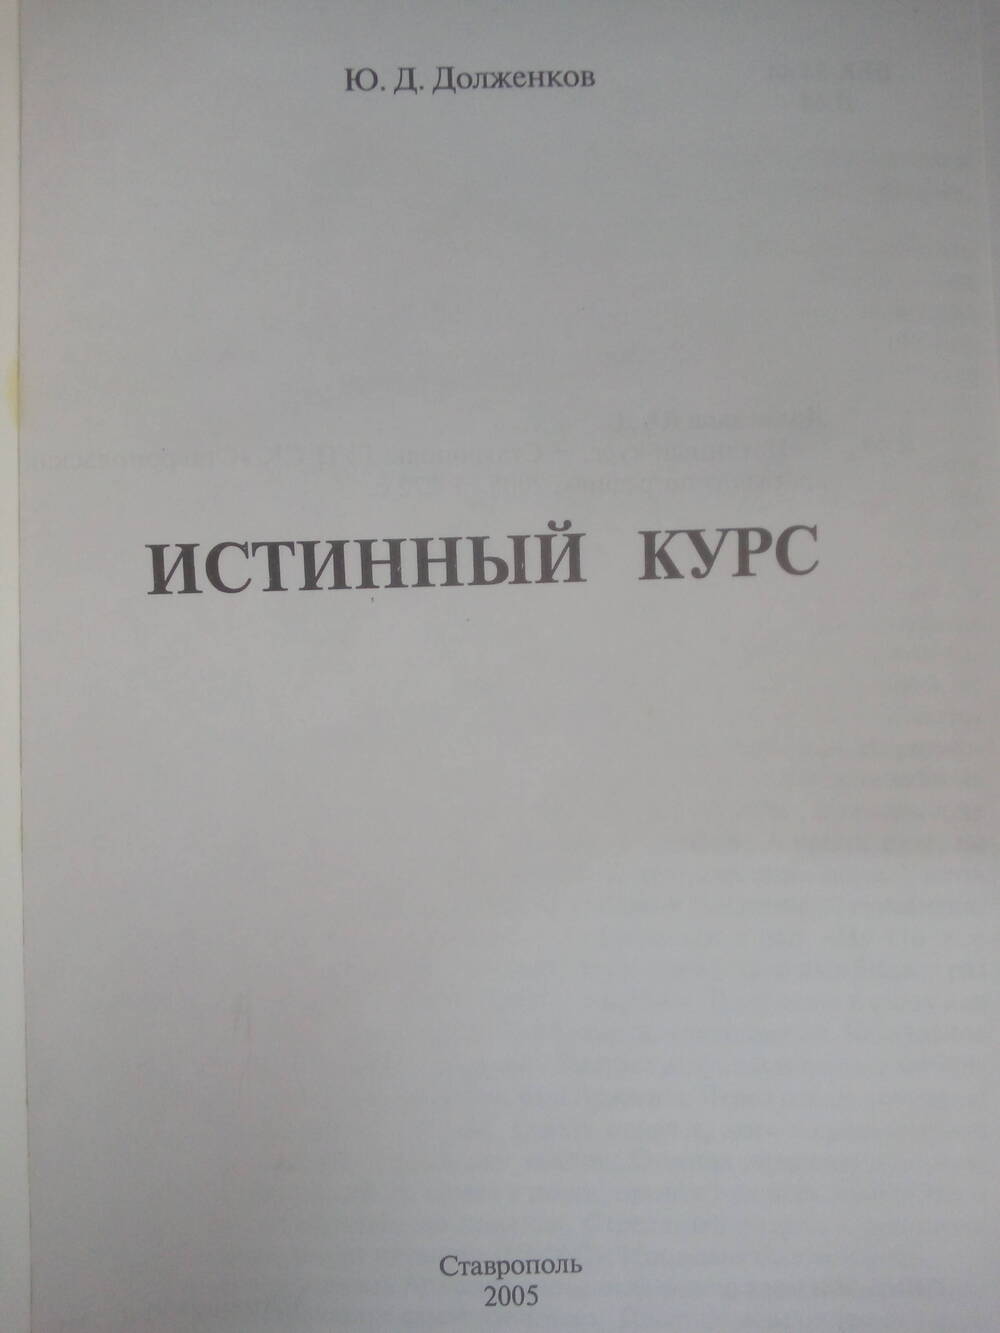 Книга Истиный курс.Ставрополь, 2005 год.